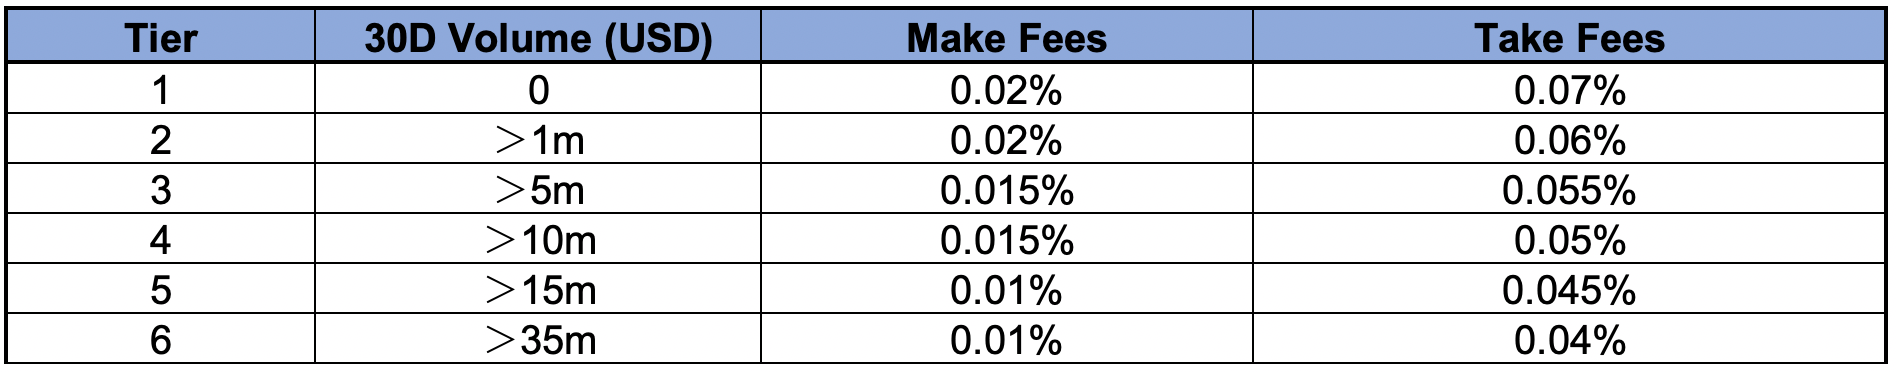 ftx fees 1 1